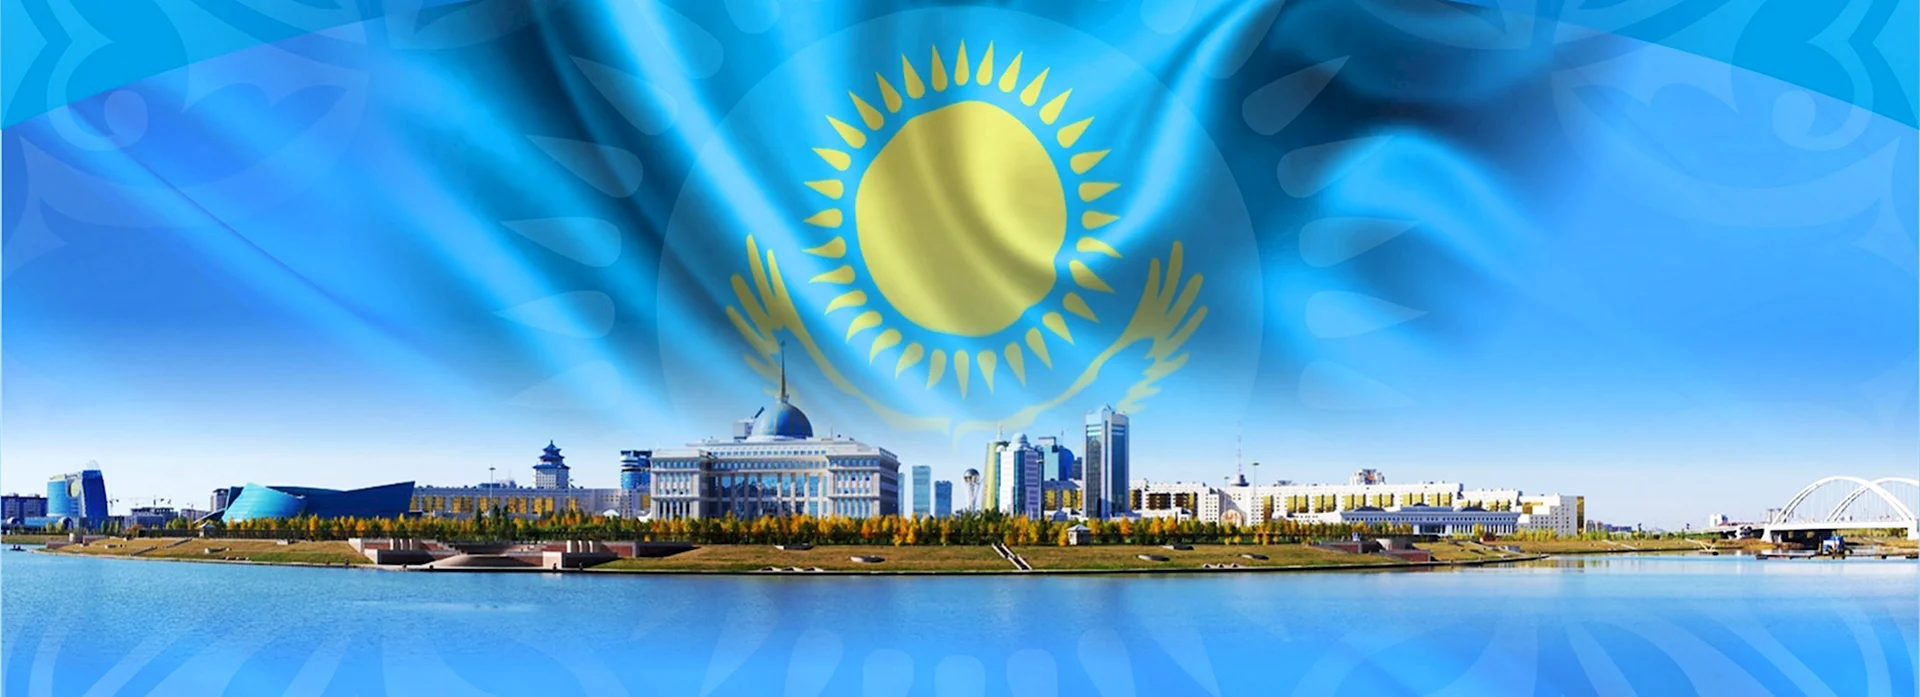 Казахстан баннер